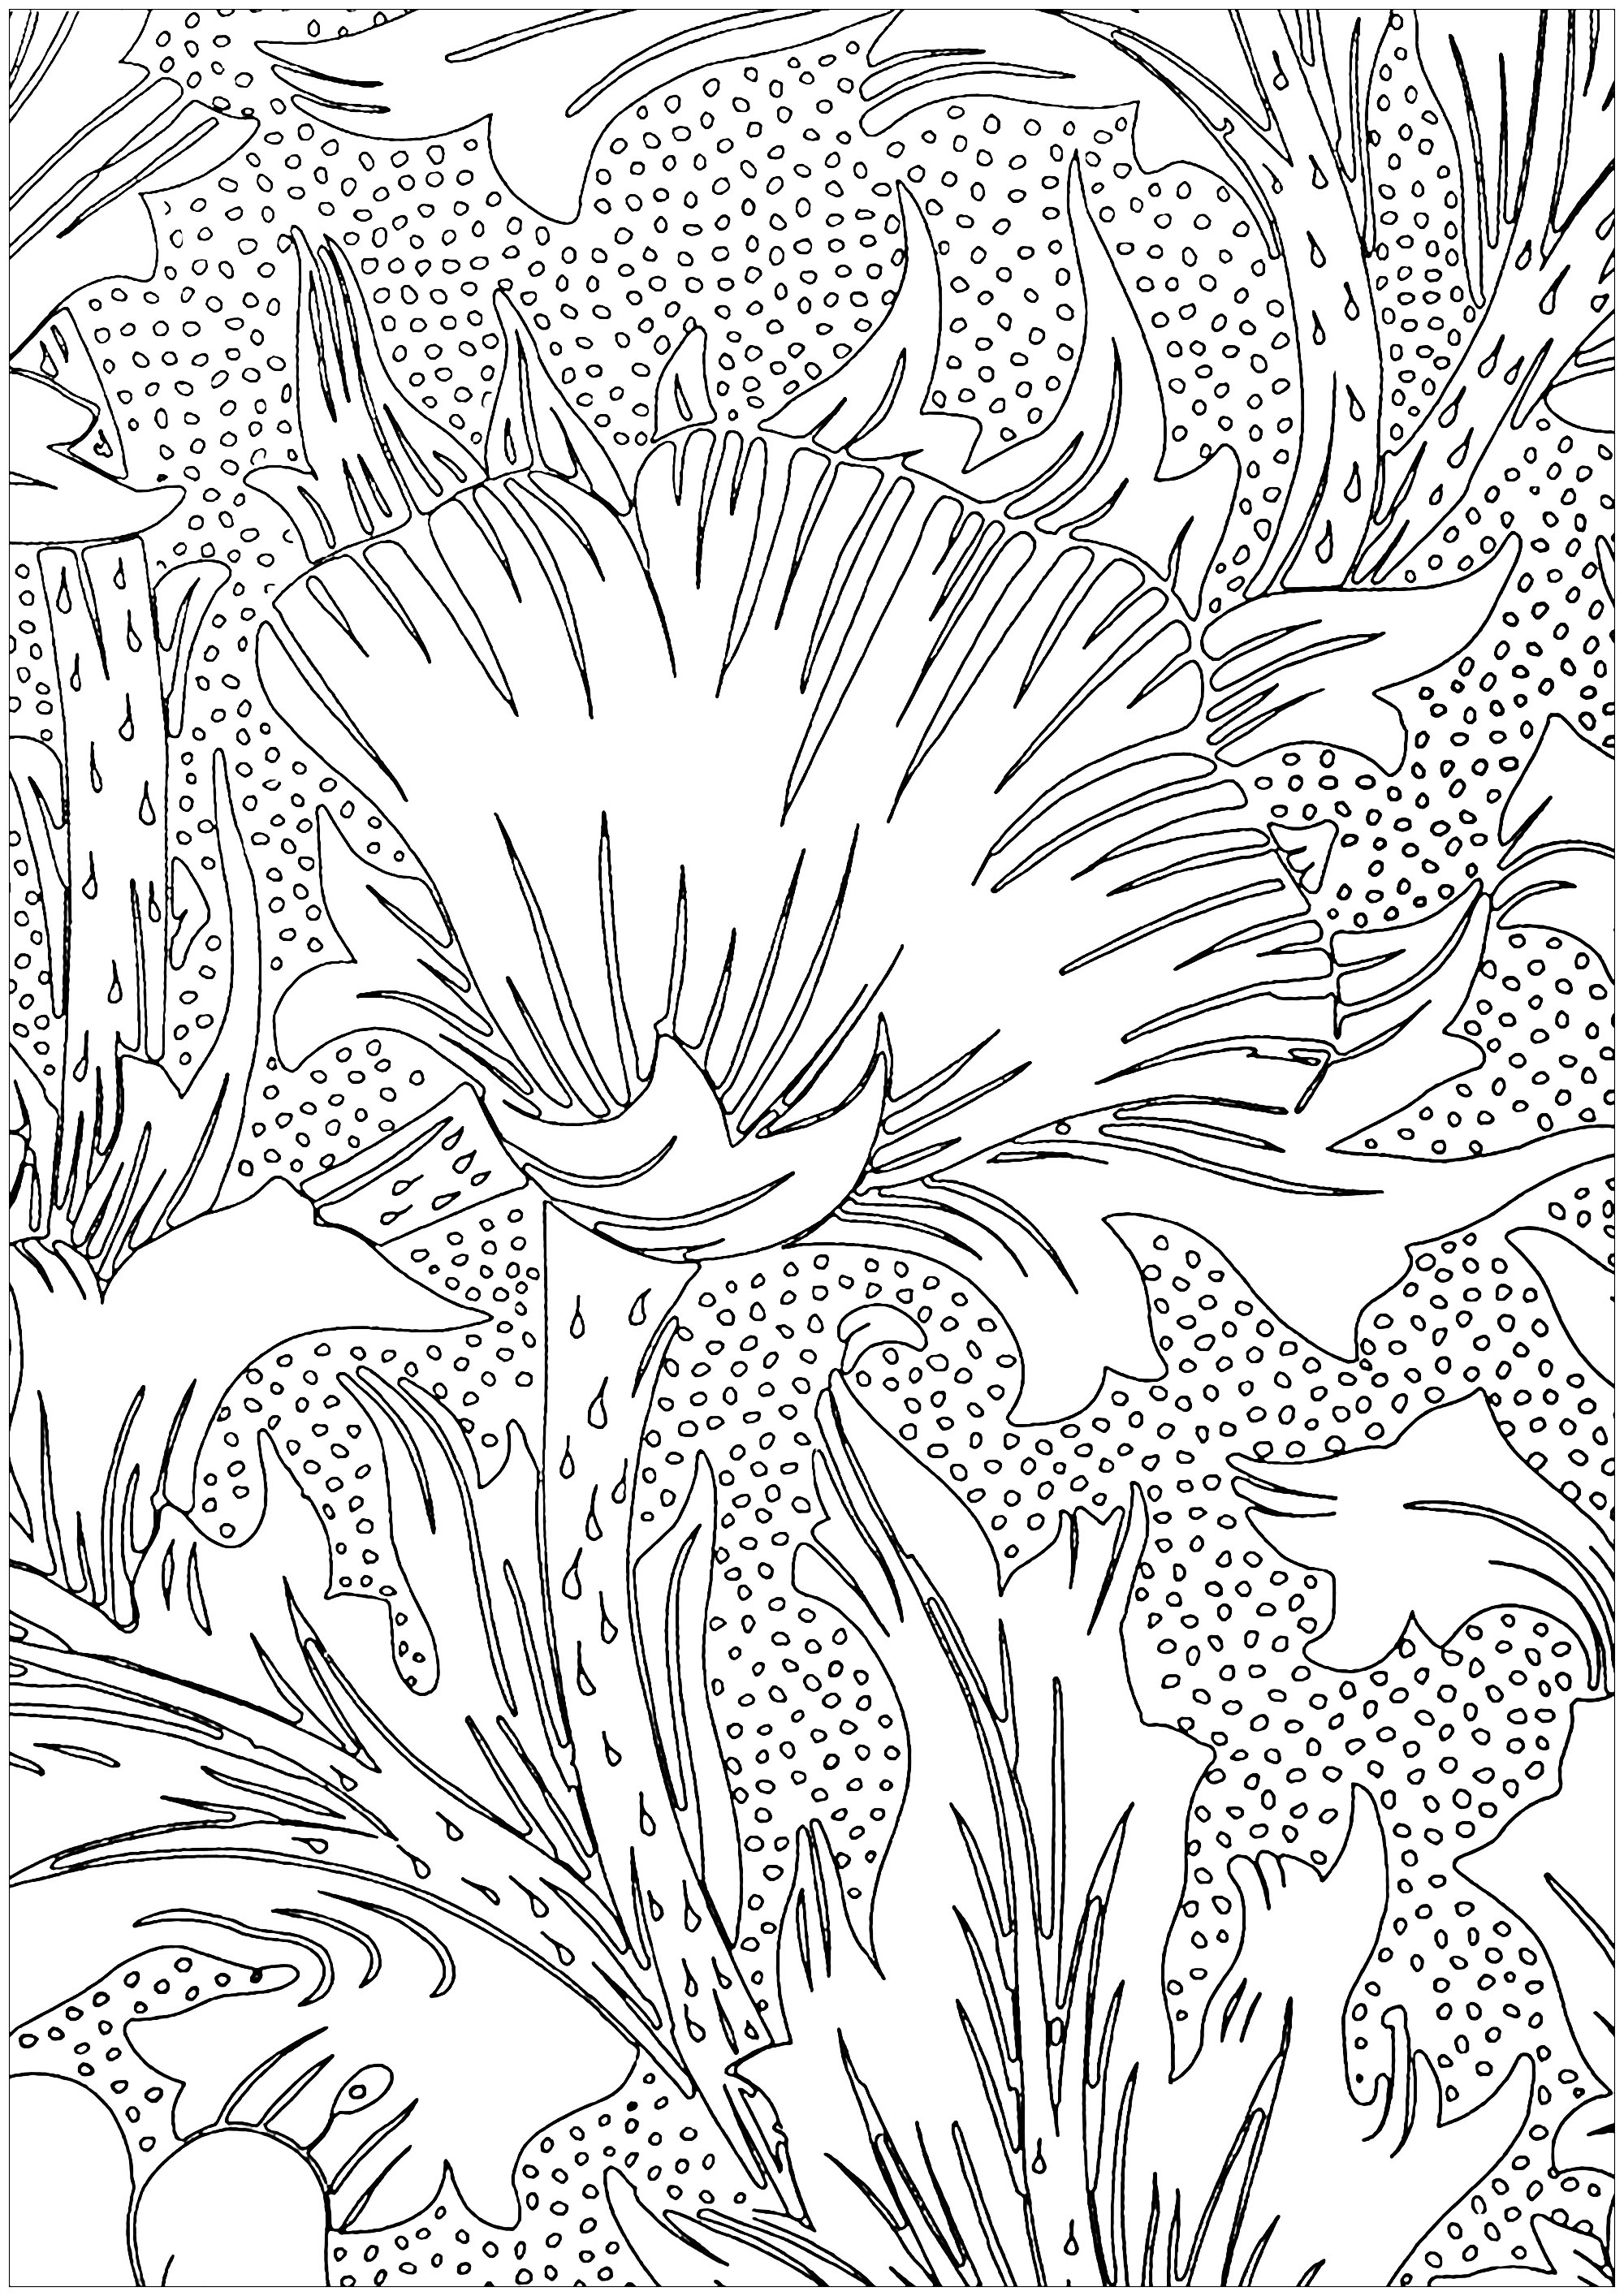 Página para colorear creada a partir de un diseño de Arts & Crafts que representa flores, de May Morris (1885). May Morris (1862 1938), hija menor de William Morris, fue una artista, artesana, diseñadora de bordados, joyera y principal exponente femenina del movimiento británico Arts & Crafts. Especializada en bordados, diseñó algunos de los tejidos más importantes de Morris & Co.